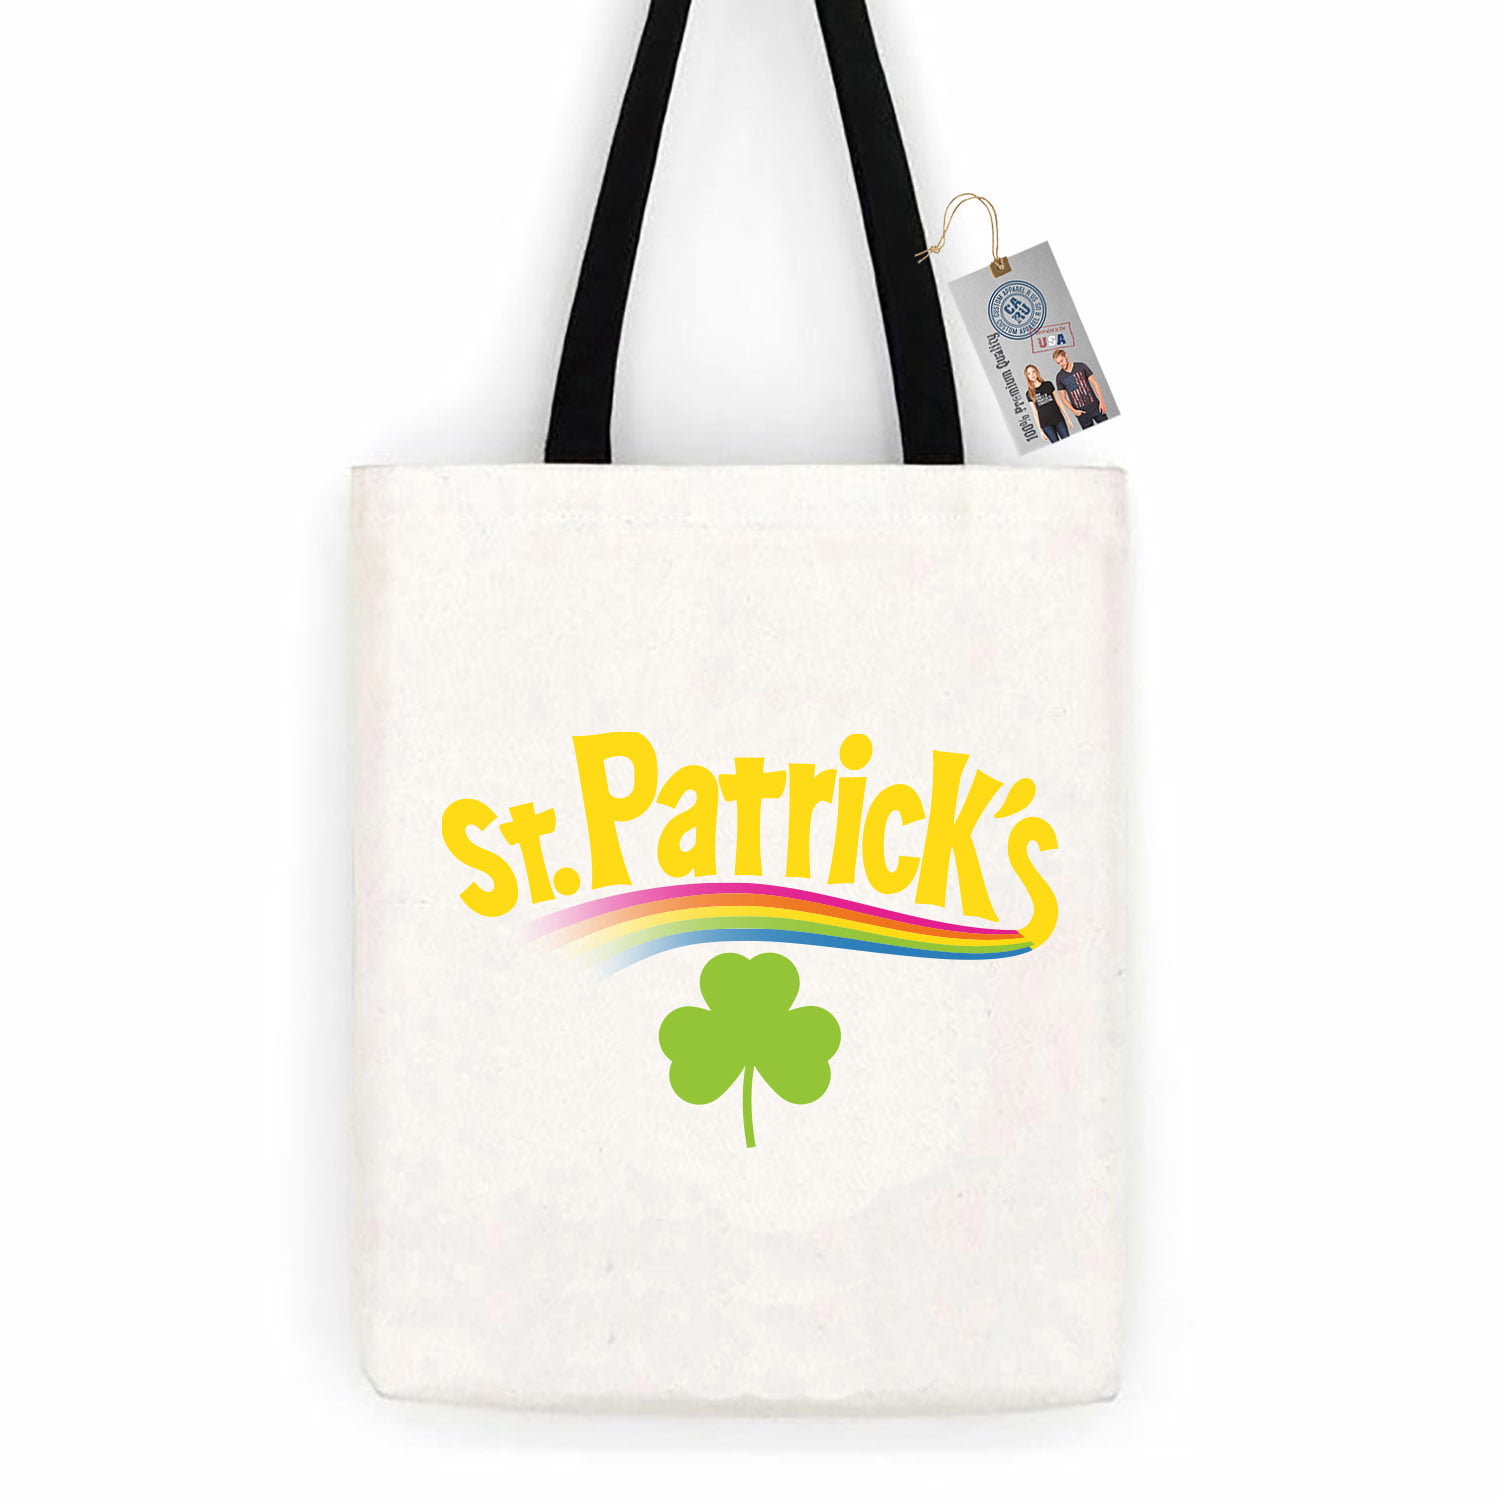 Saint Patricks Day White Clover Casual Style Lightweight Canvas Backpack School Bag Handbag Work Bag Shoulder Handbag Travel Bag